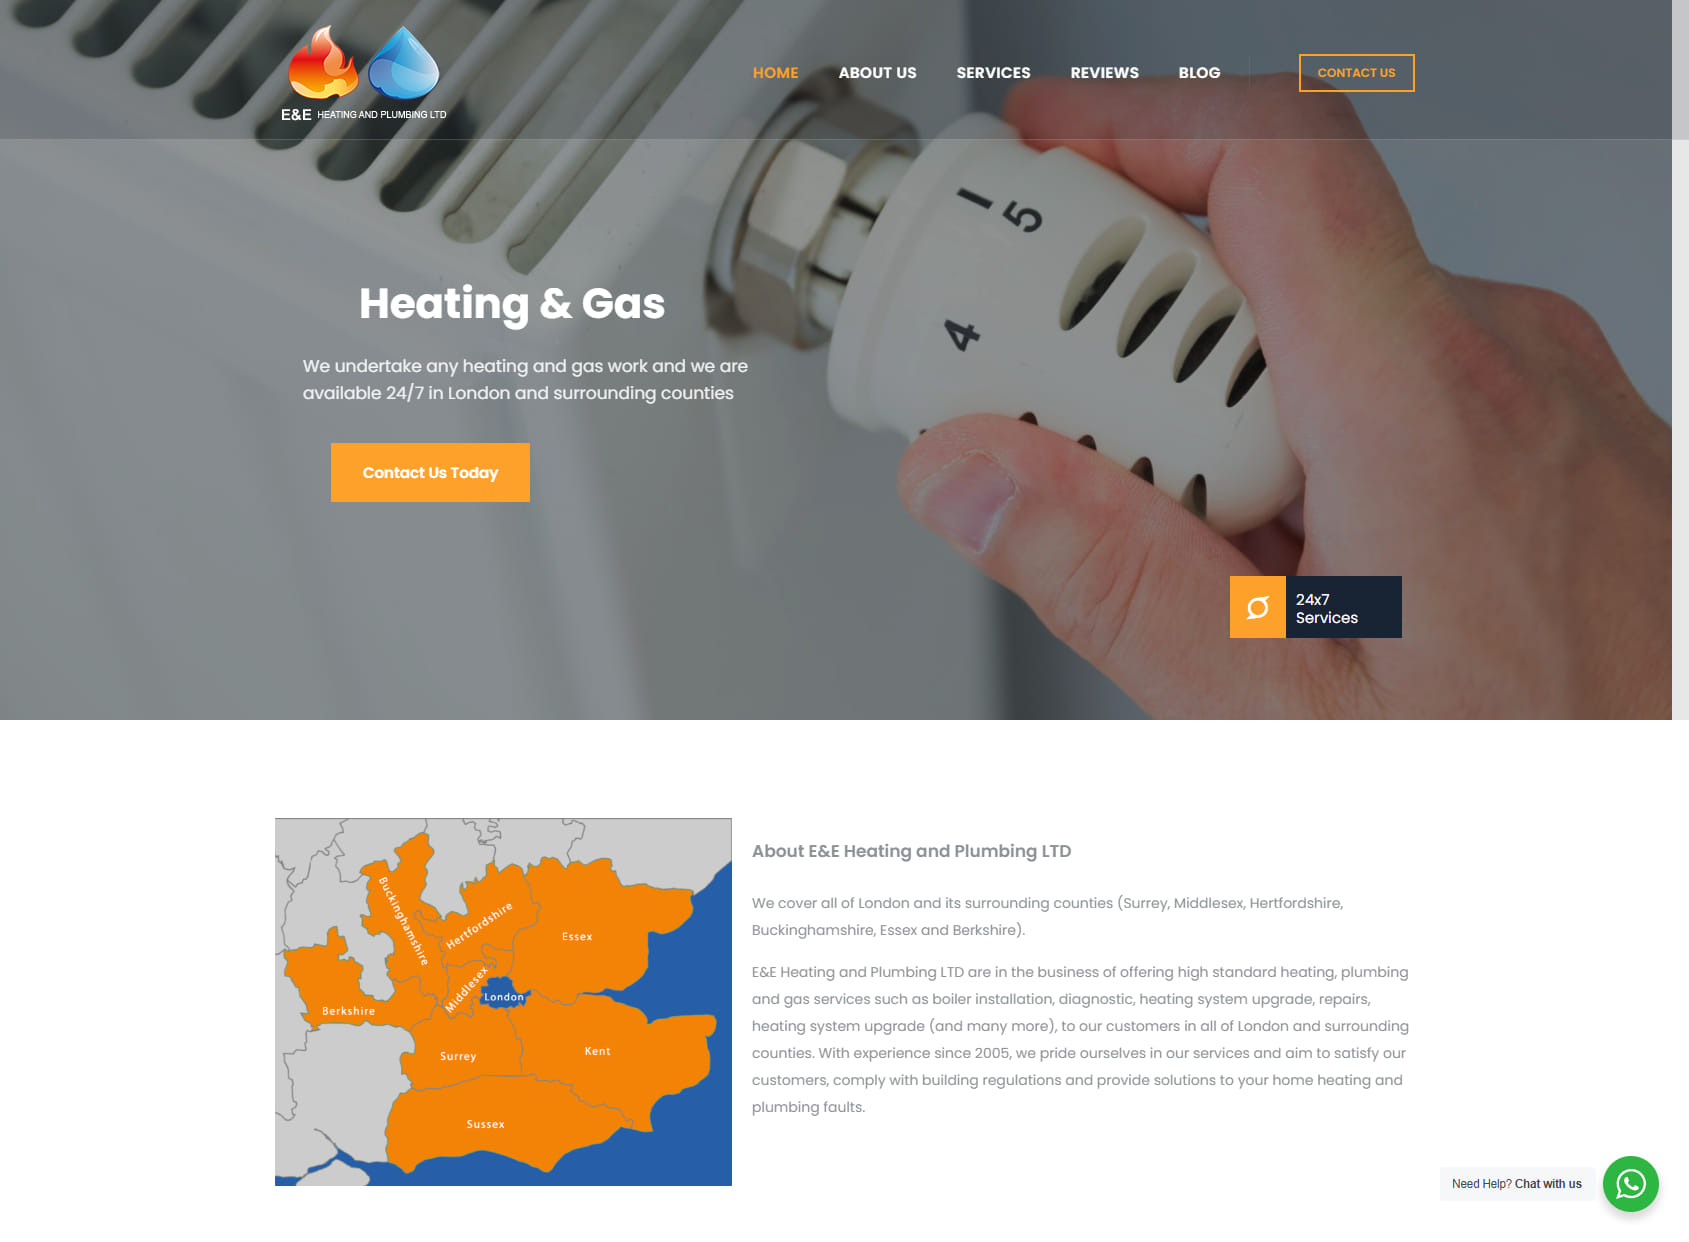 E&E Heating And Plumbing LTD